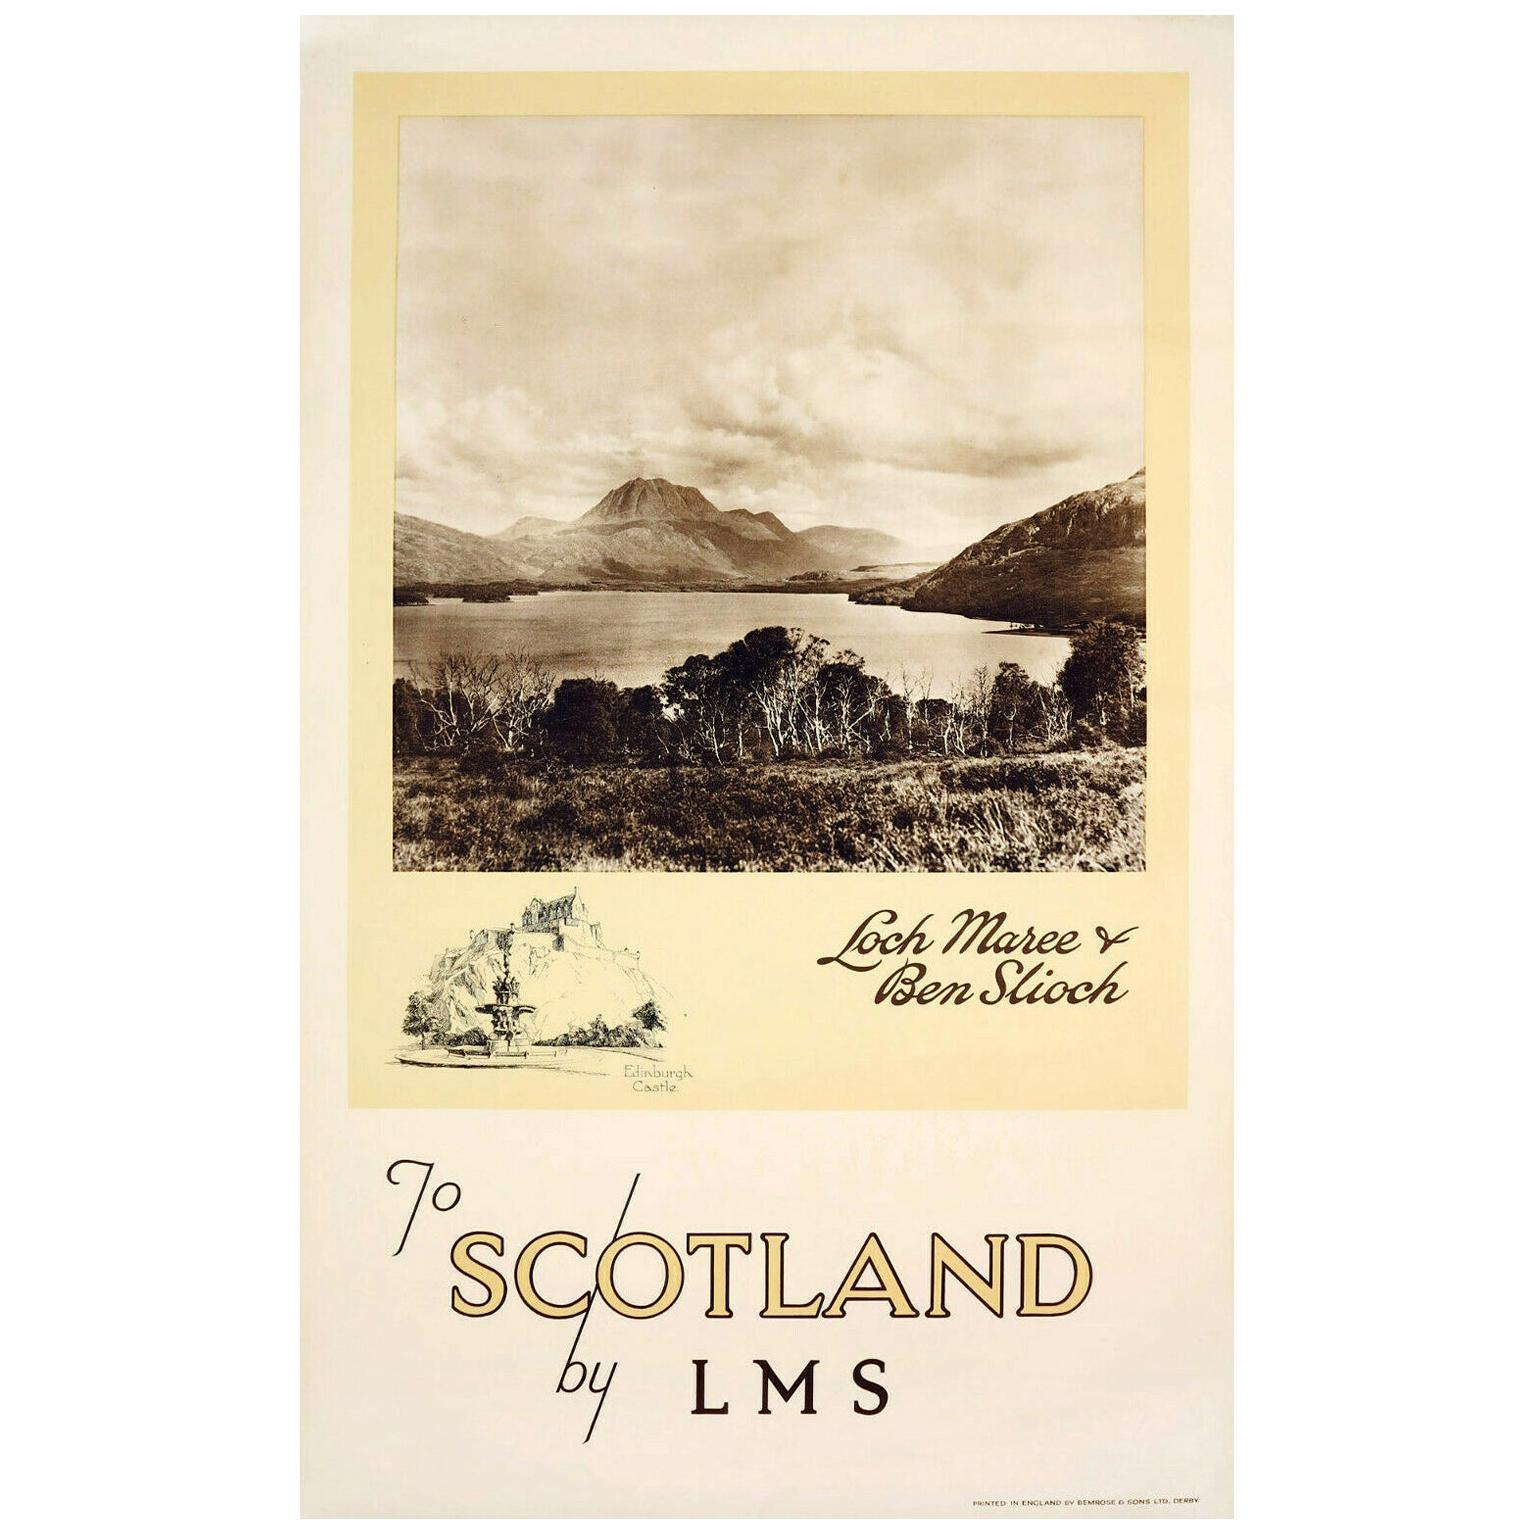 Original Vintage Scotland By LMS Poster - Loch Maree Ben Slioch Edinburgh Castle